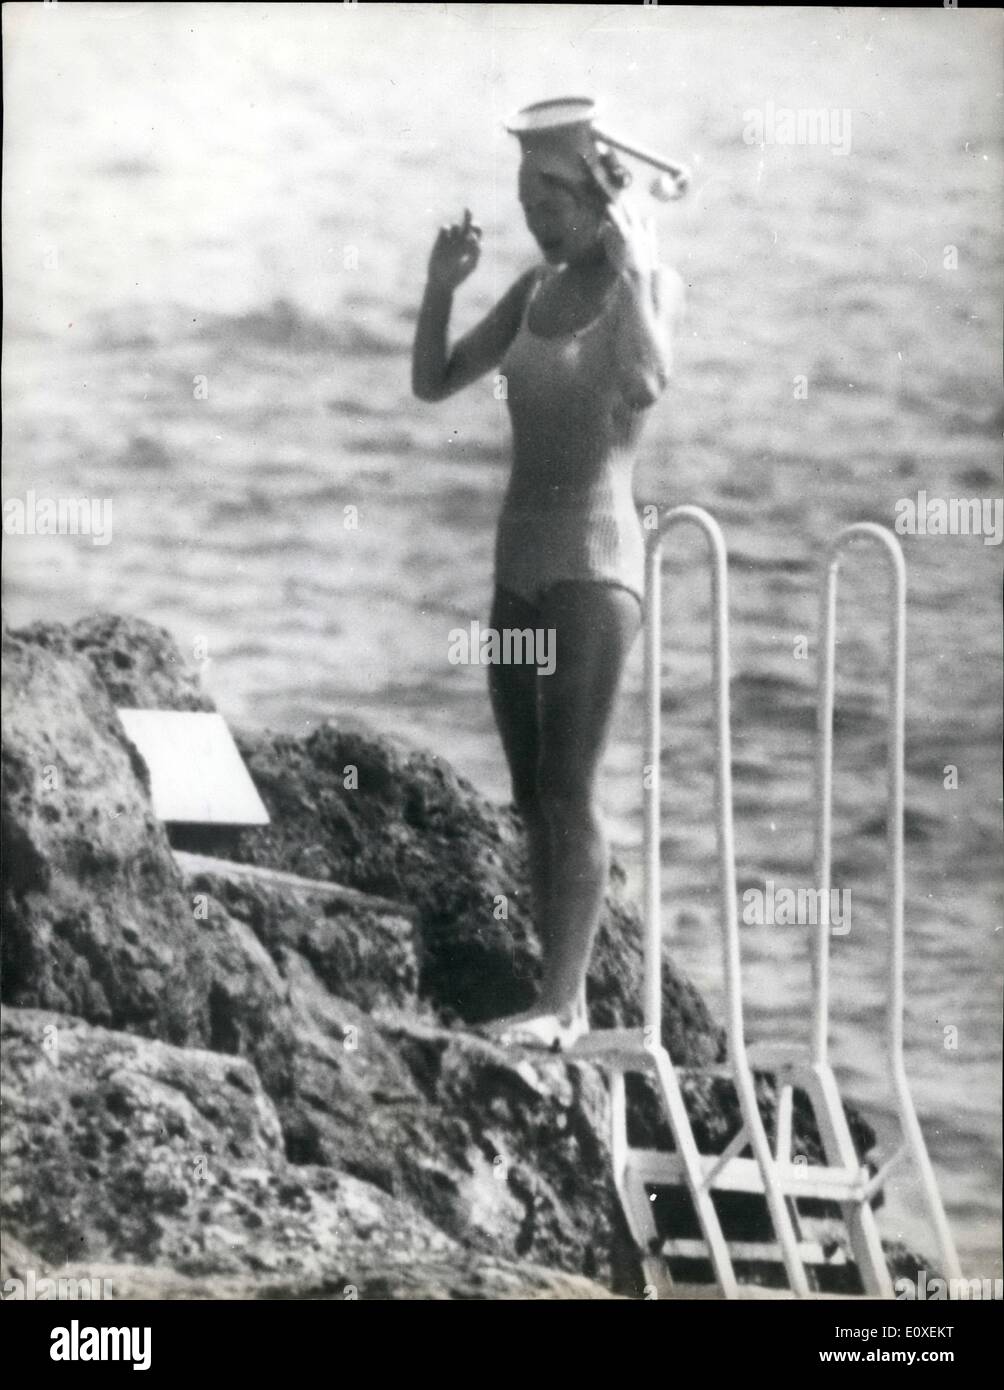 Agosto 08, 1966 - Famiglia Reale Olandese in vacanza i membri della famiglia reale olandese sono in vacanza al loro Riviera Italiana villa a Porto Ereole. Foto Stock